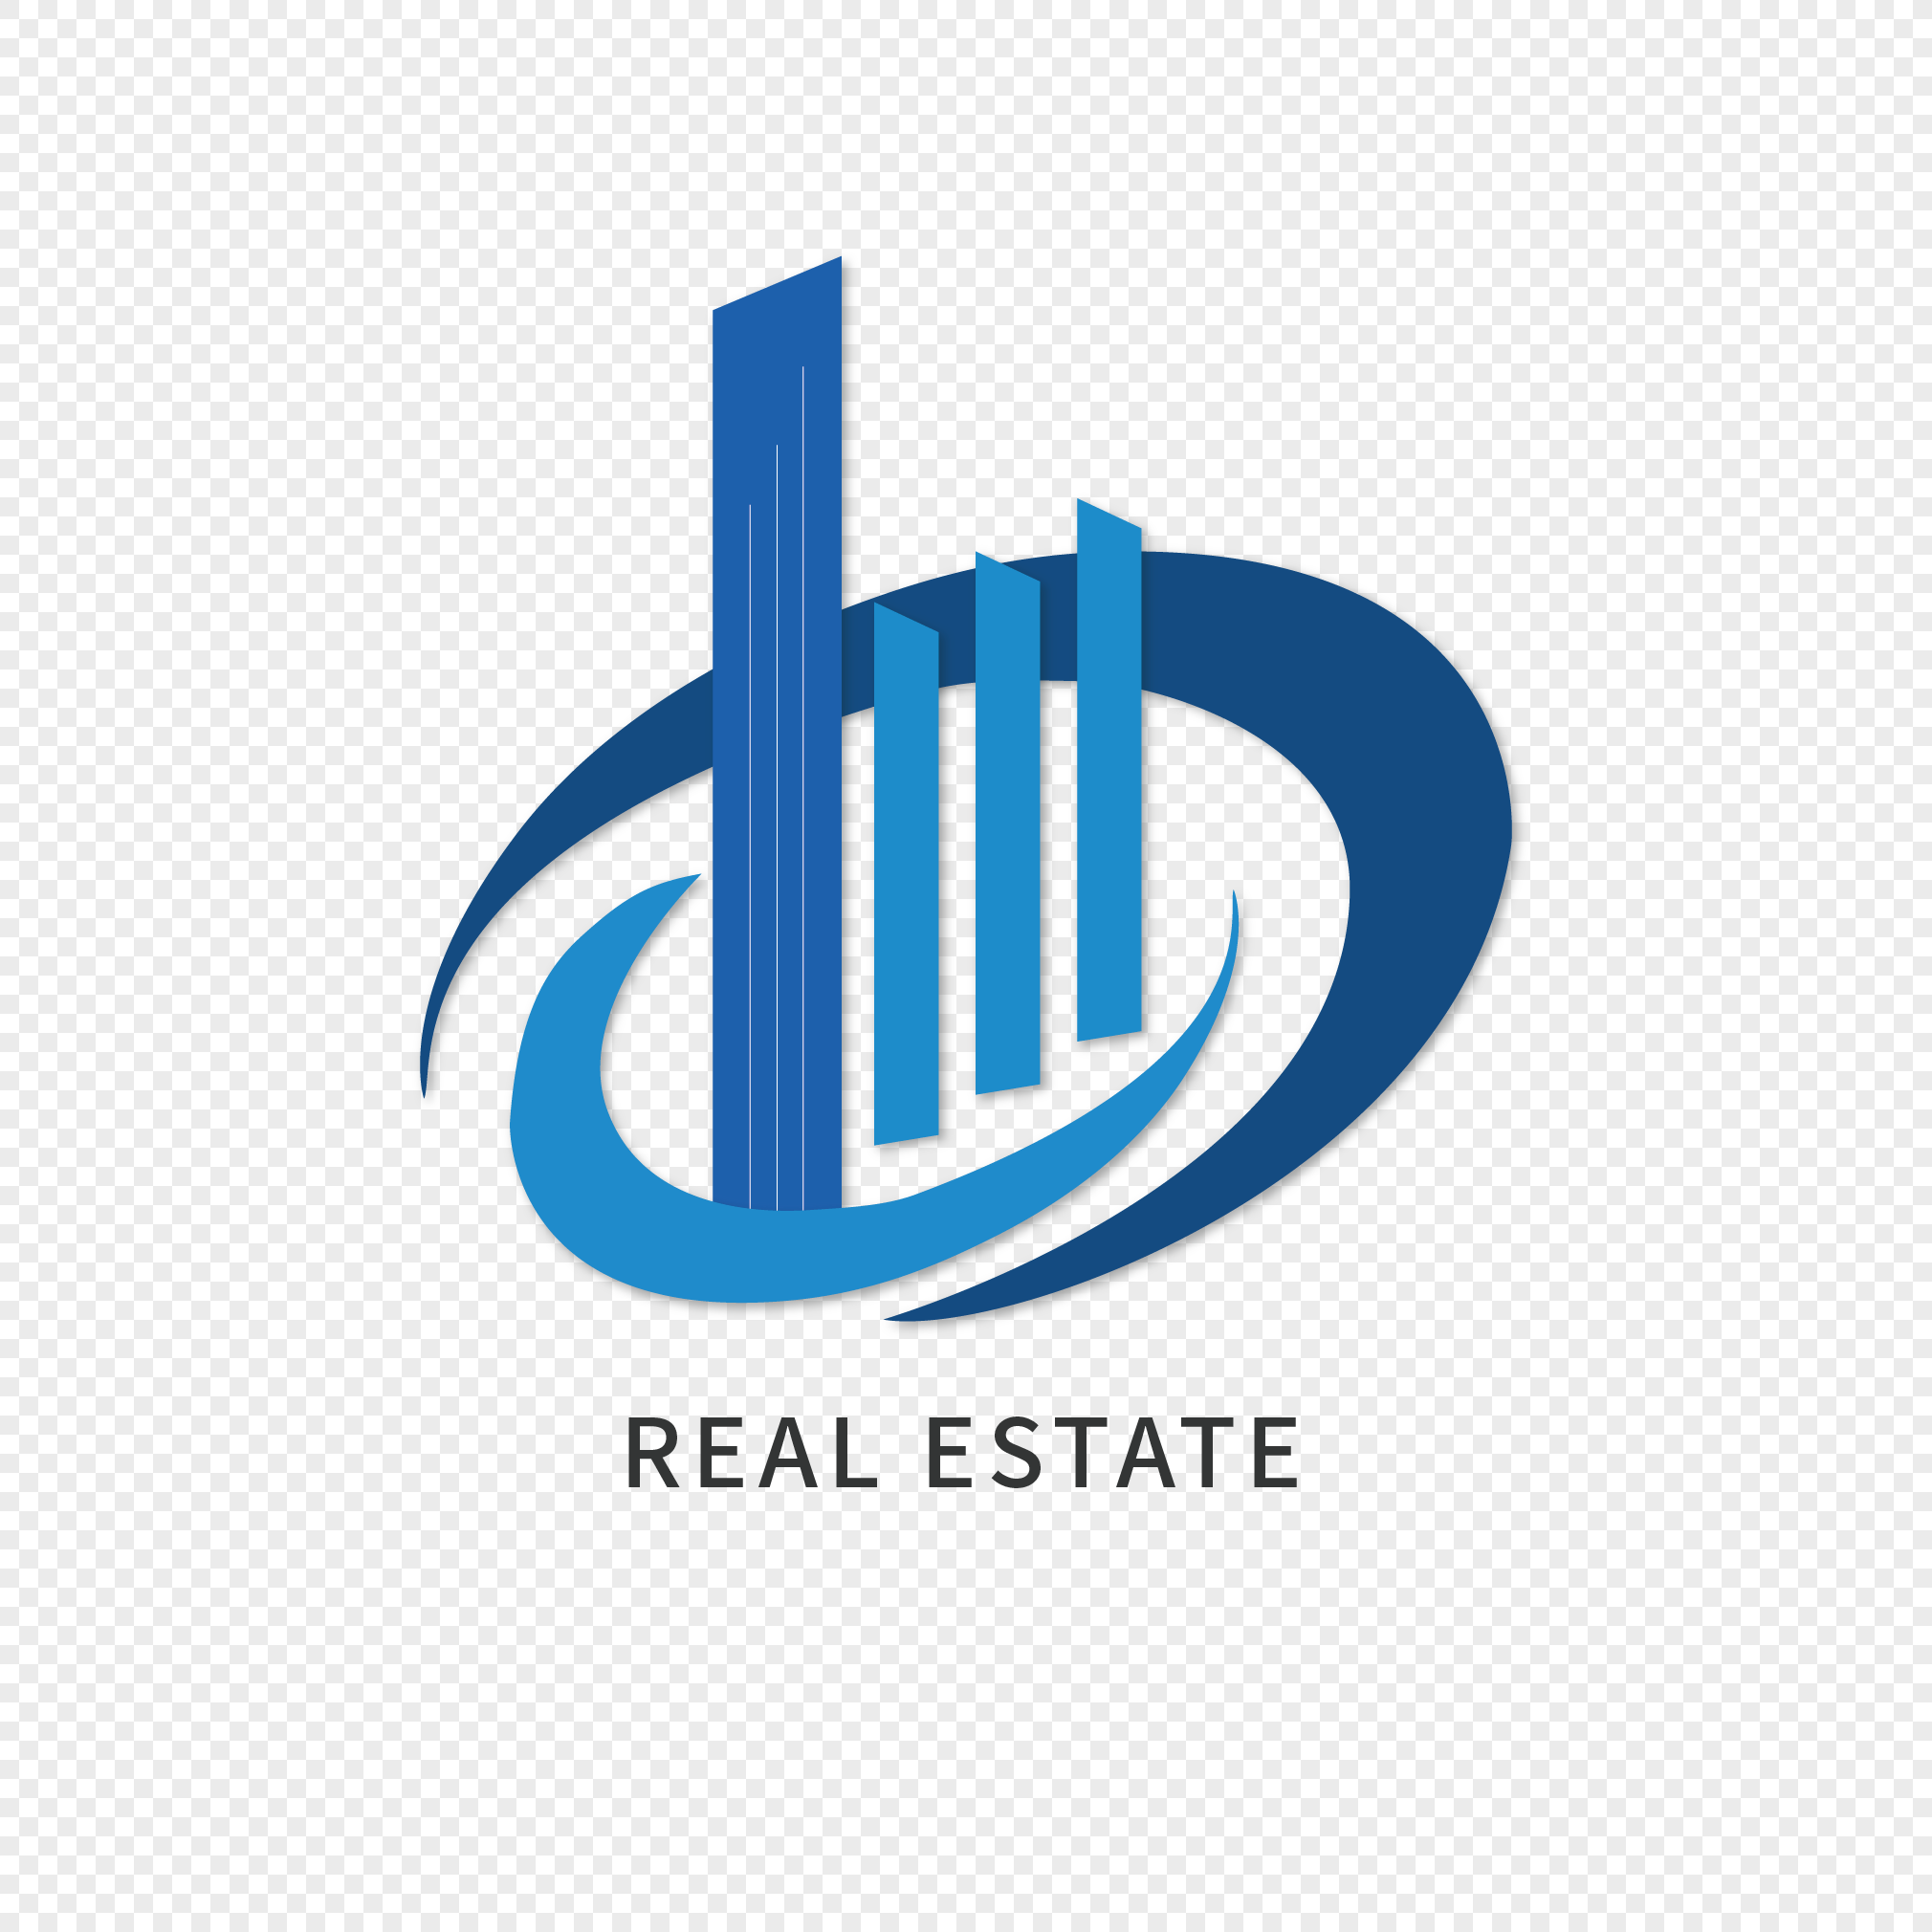 Real estate building logo, building, real estate logo, logo png image